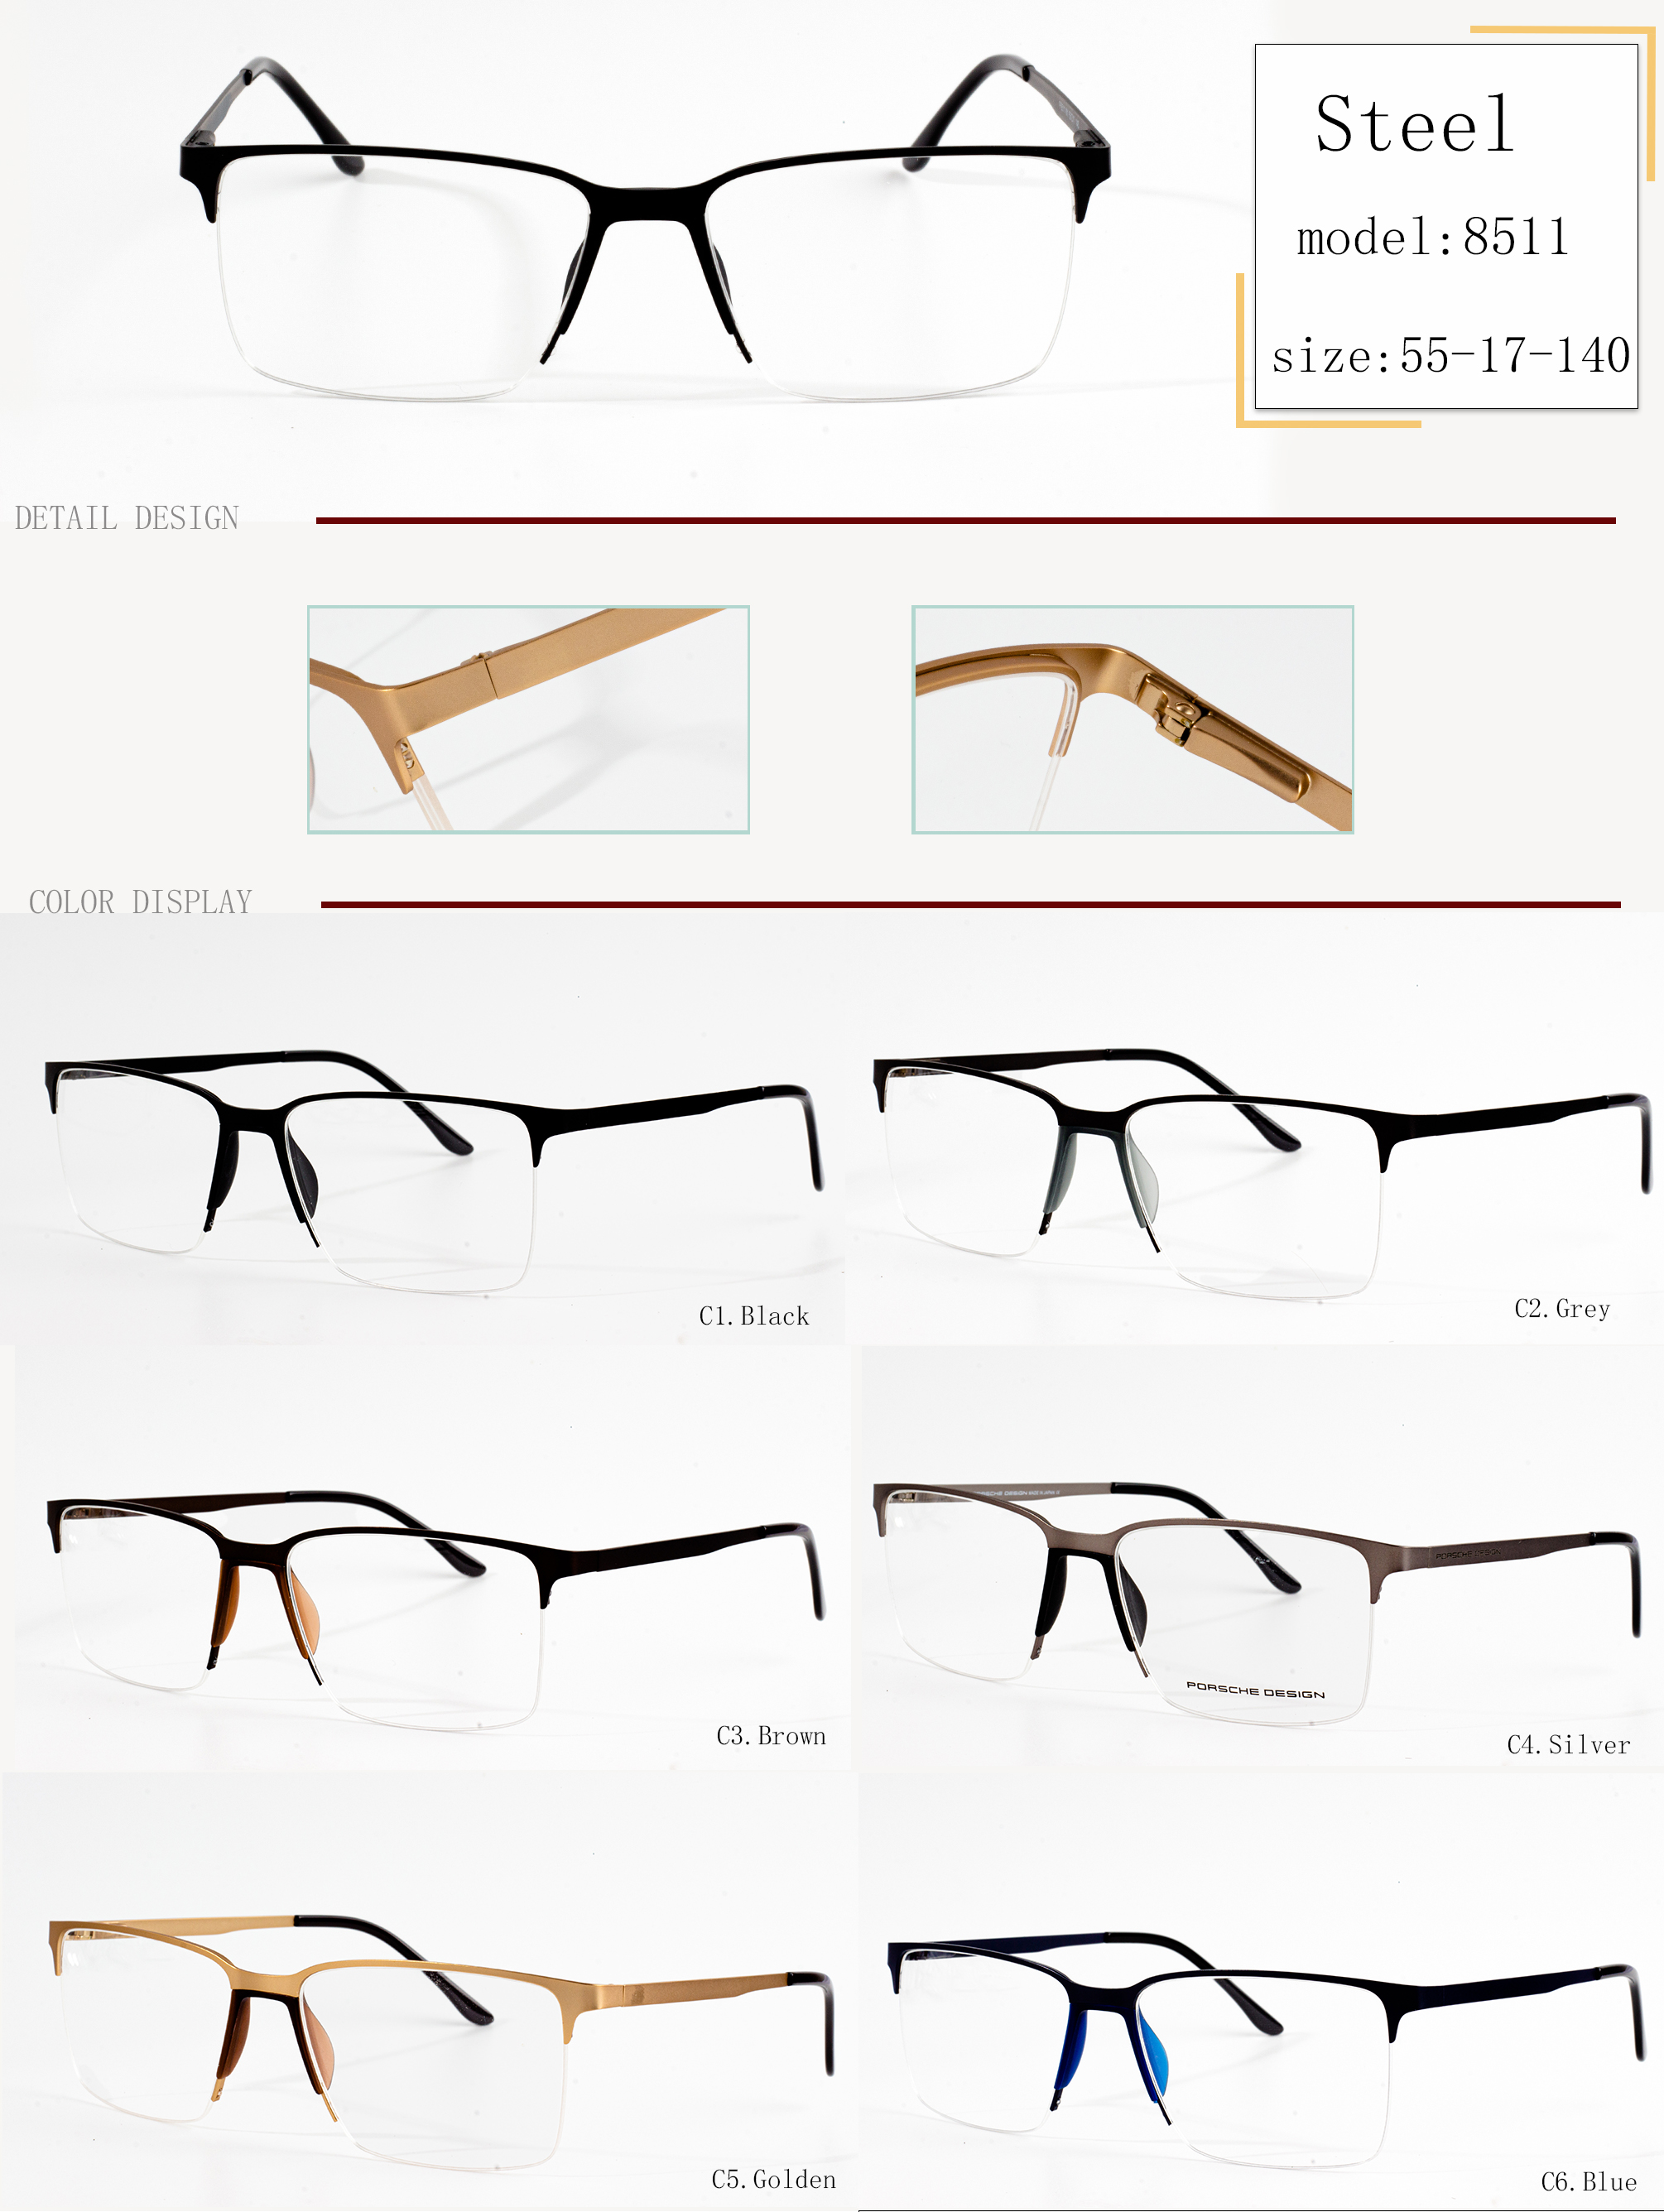 divatos szemüvegkeretek